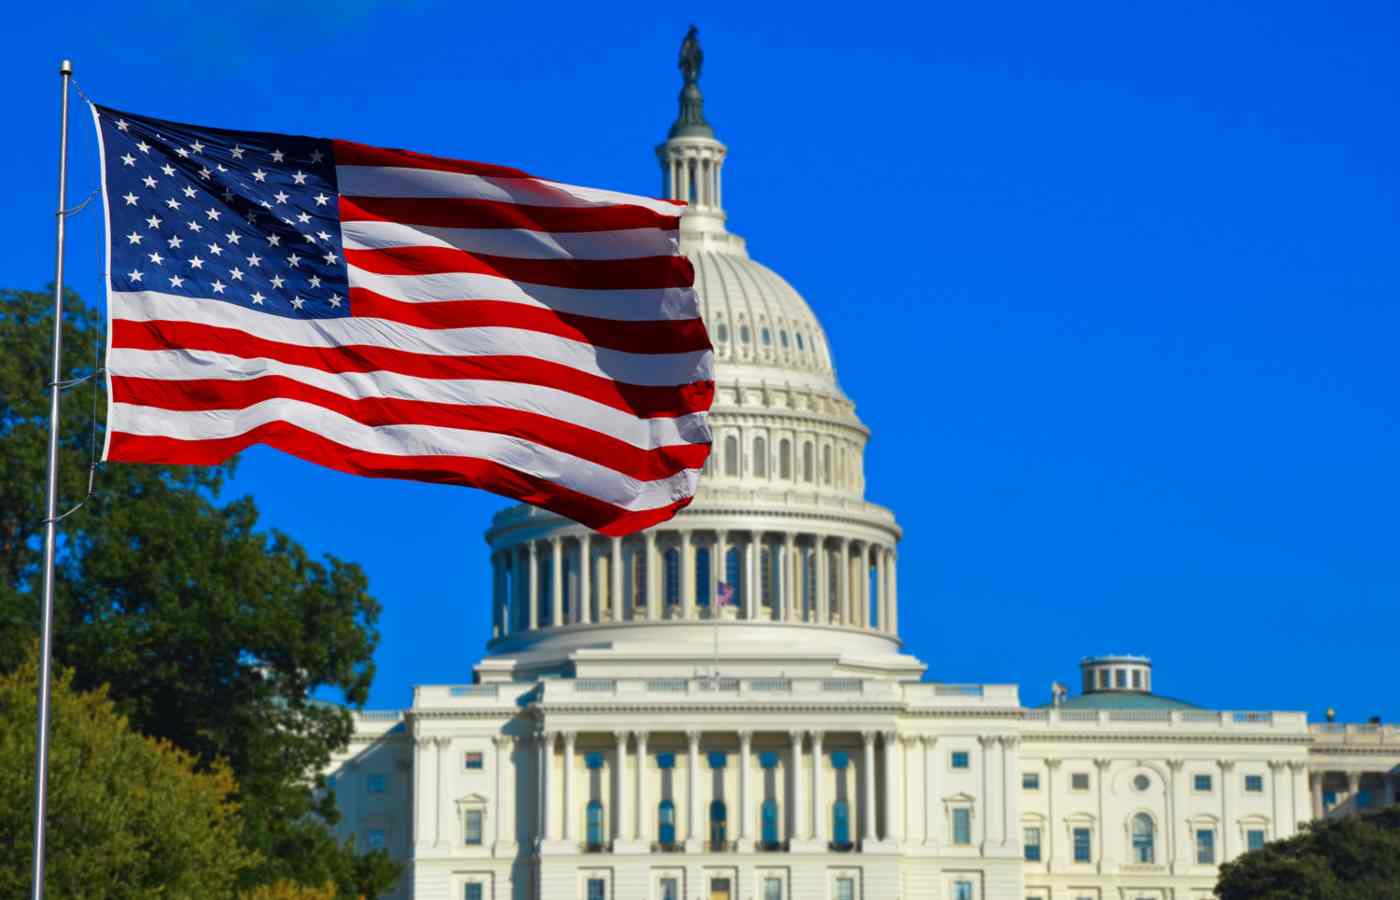 Capitólio em Washington, DC, com uma bandeira dos Estados Unidos ao lado